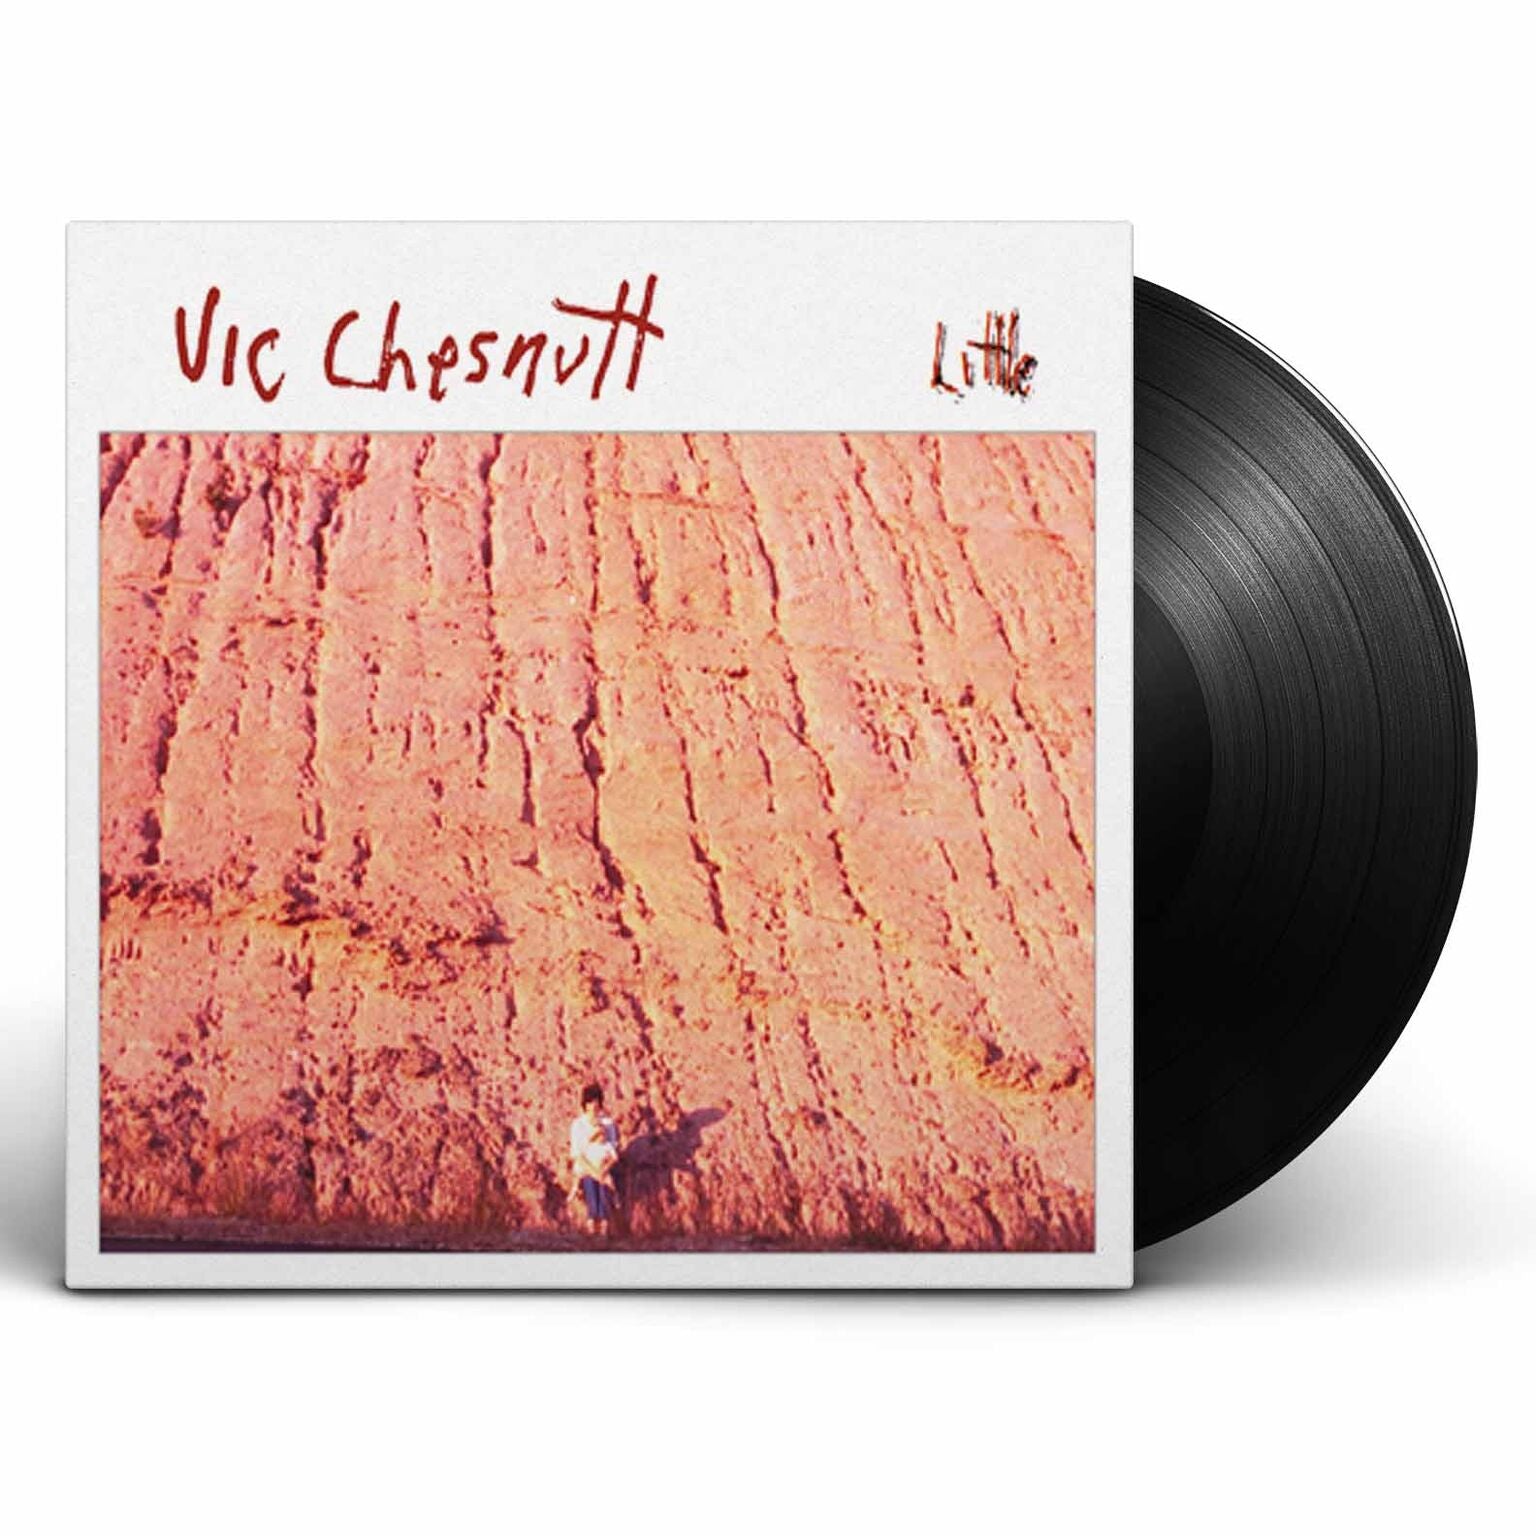 Vic Chesnutt - Little [Vinyl]